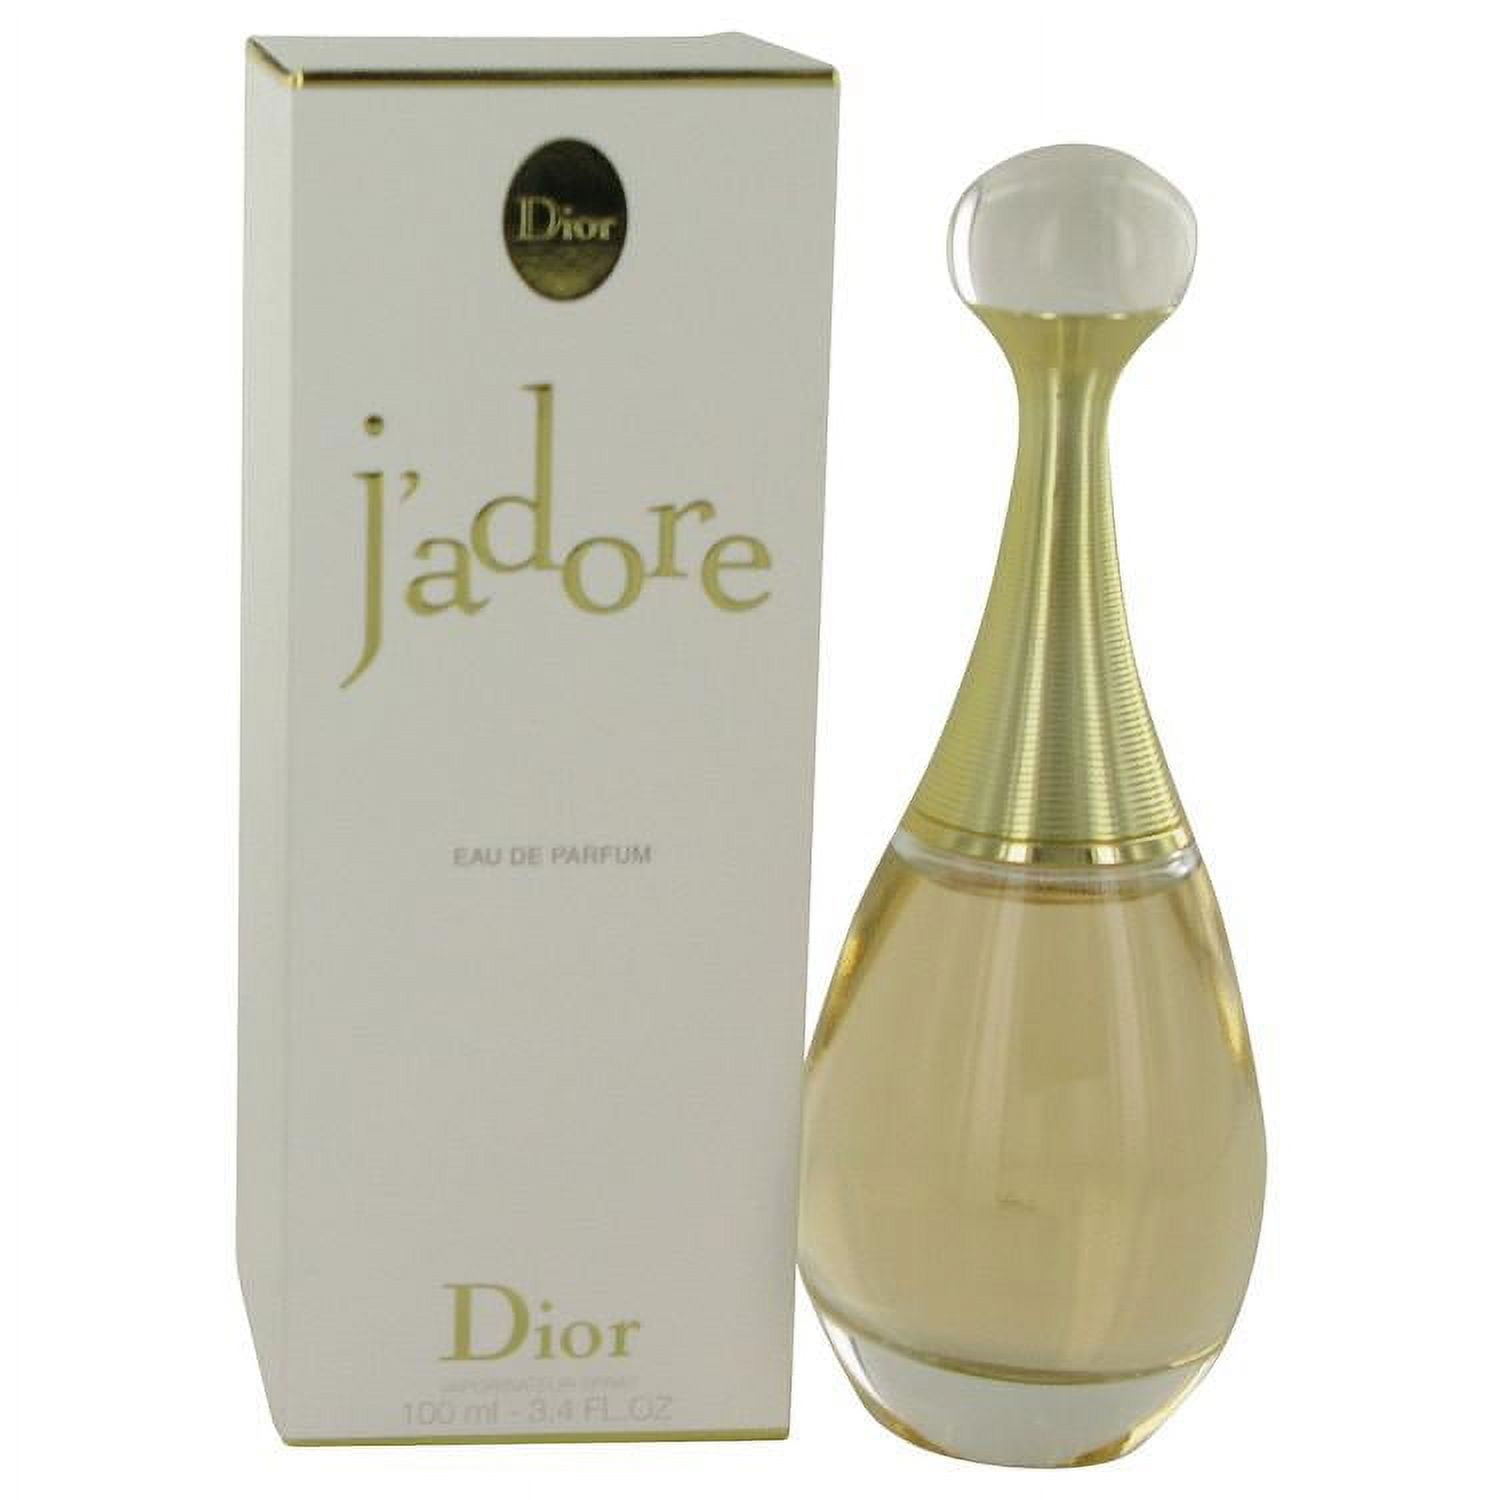 JADORE by Christian Dior Eau De Parfum Spray 3.4 oz for Women - Walmart.com